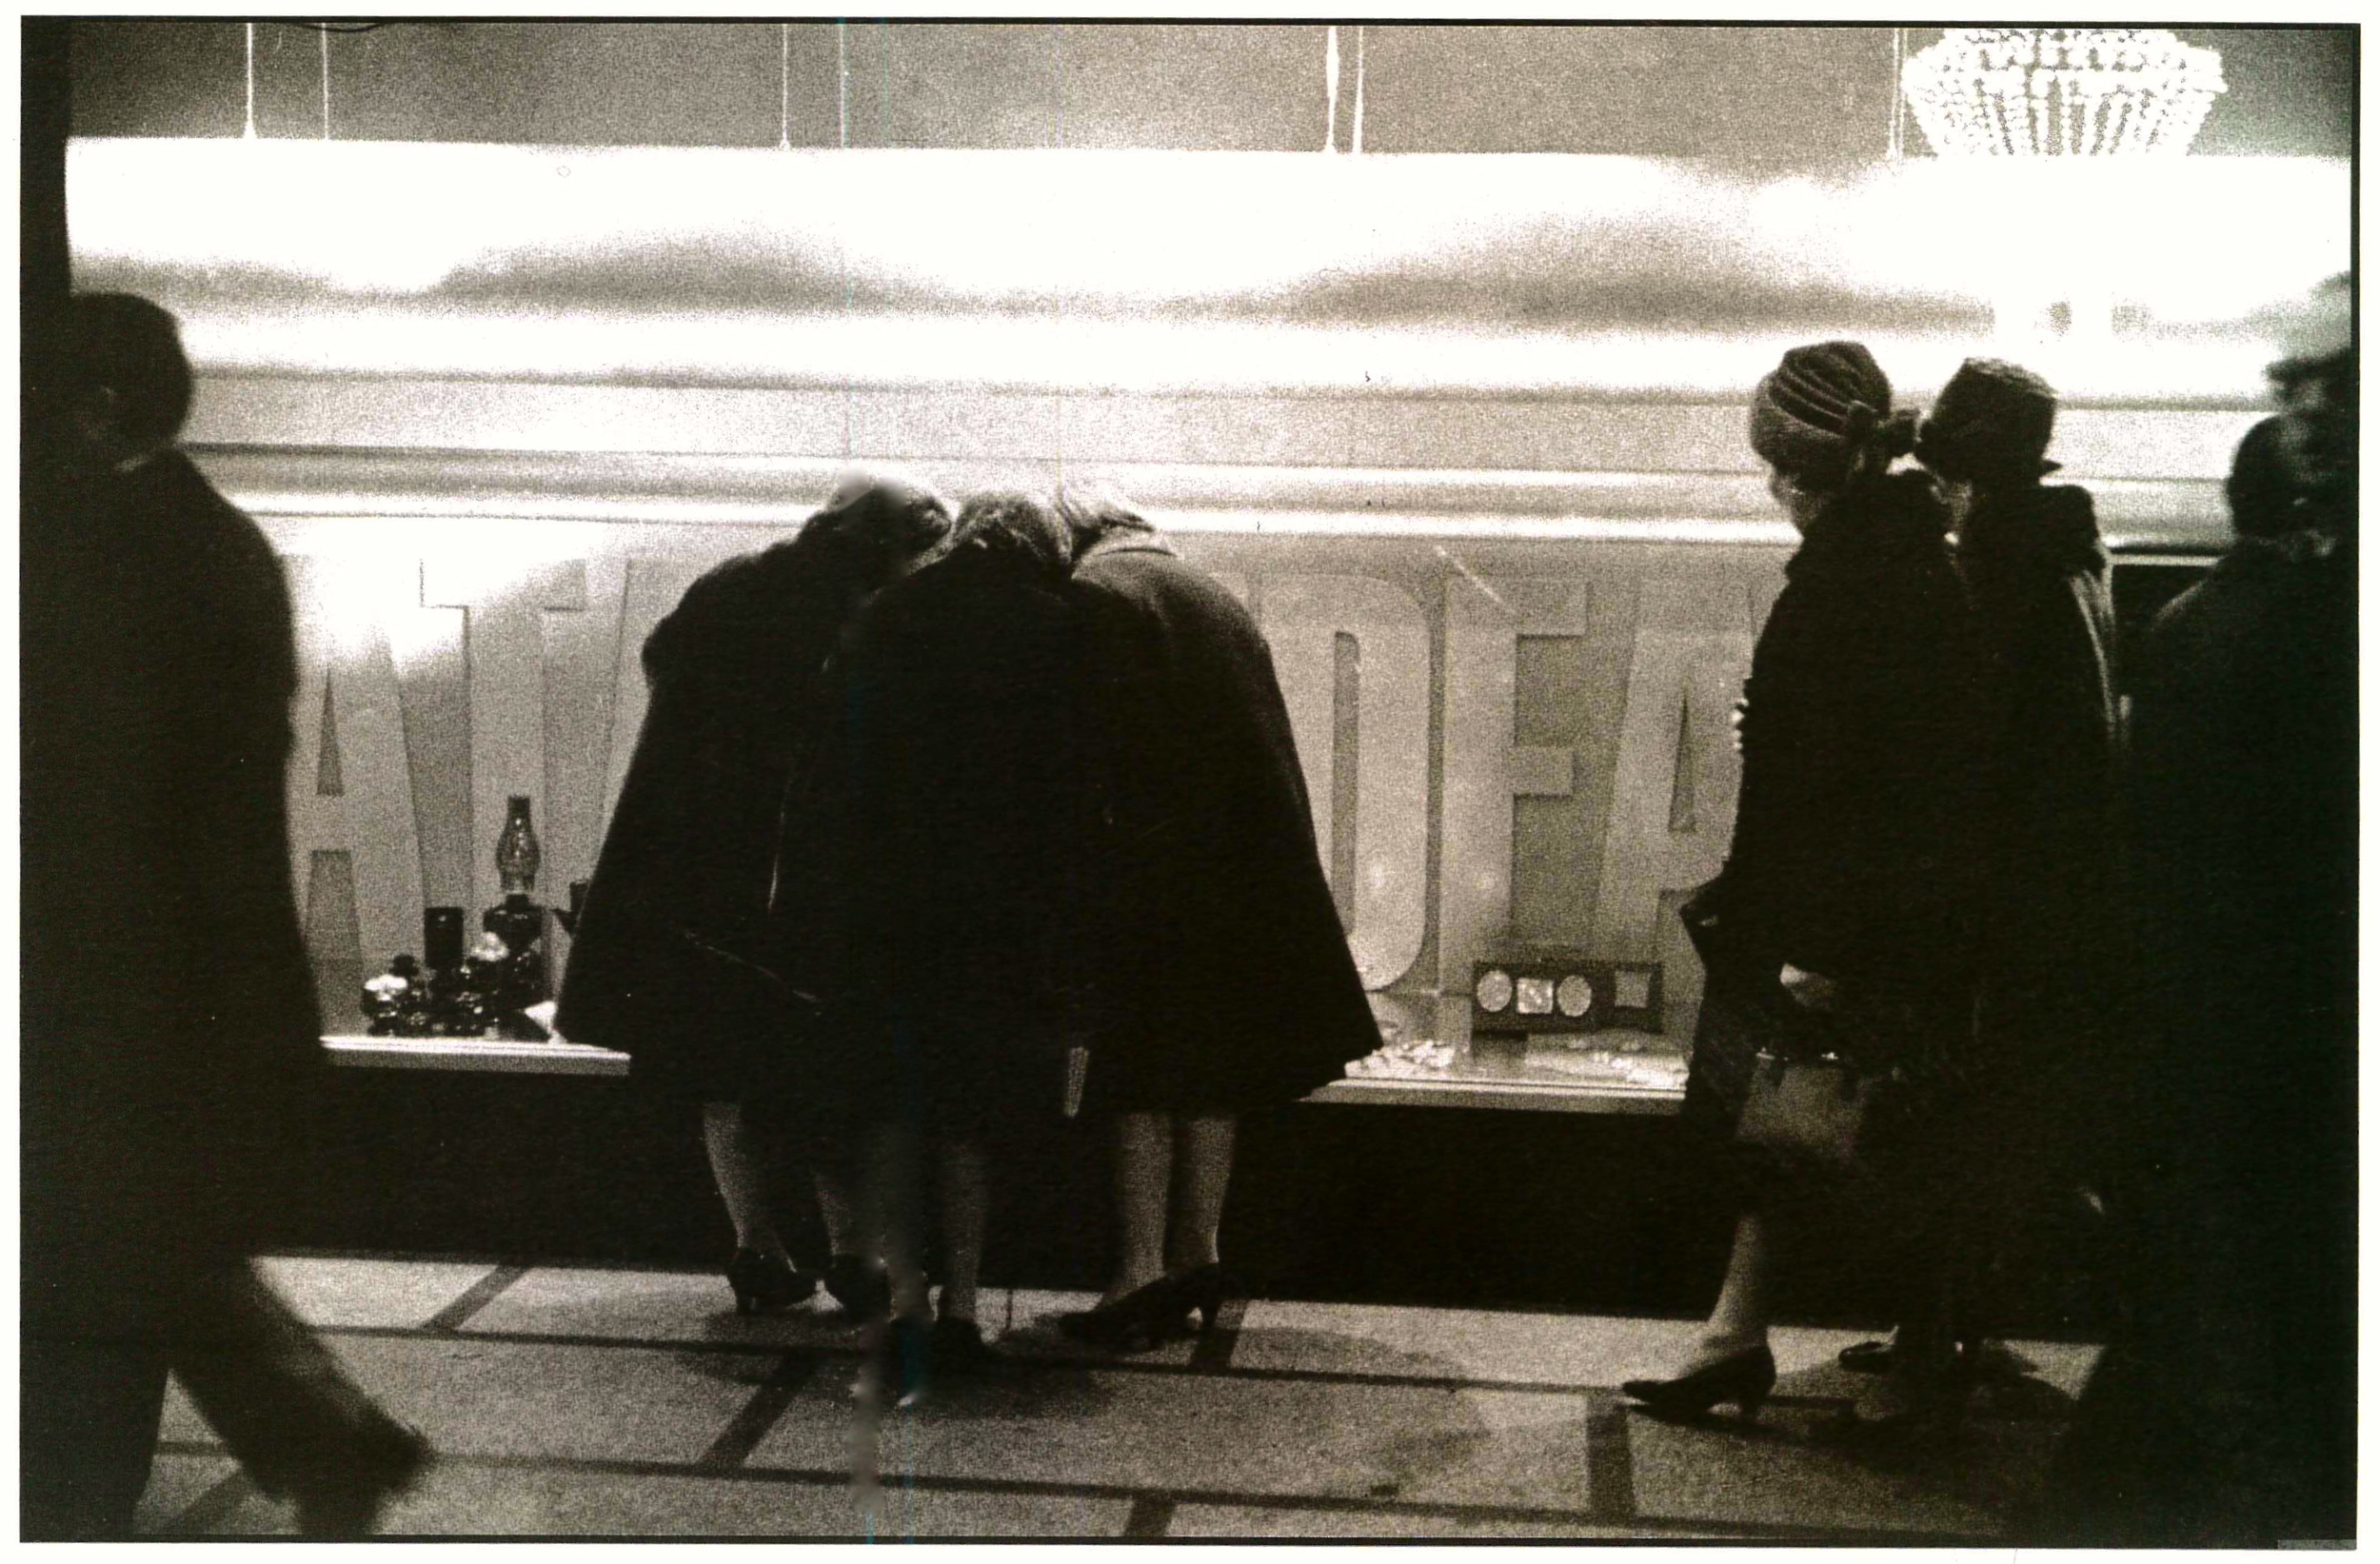   Vetrina della Rinascente per il  Natale idea.  Milano, 1966.&nbsp;  